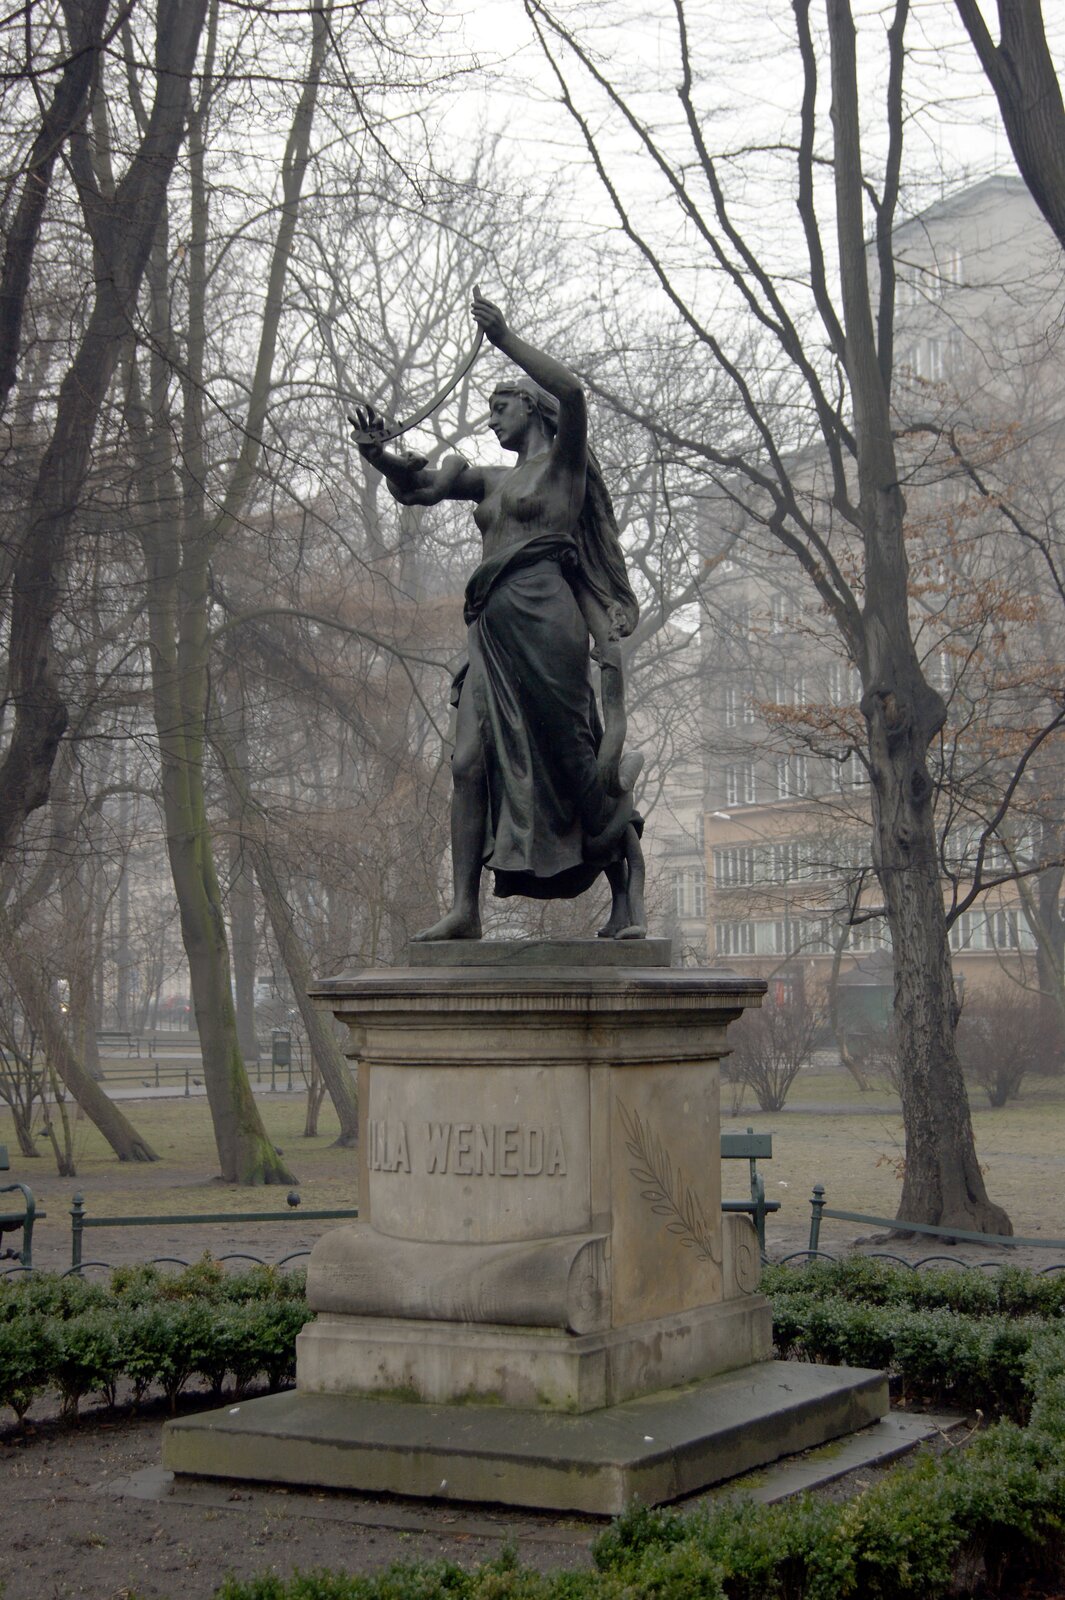 Zdjęcie przedstawia pomnik. Na cokole stoi kobieta z obnażonymi piersiami. Jej ciało owinięte jest przez długiego węża.